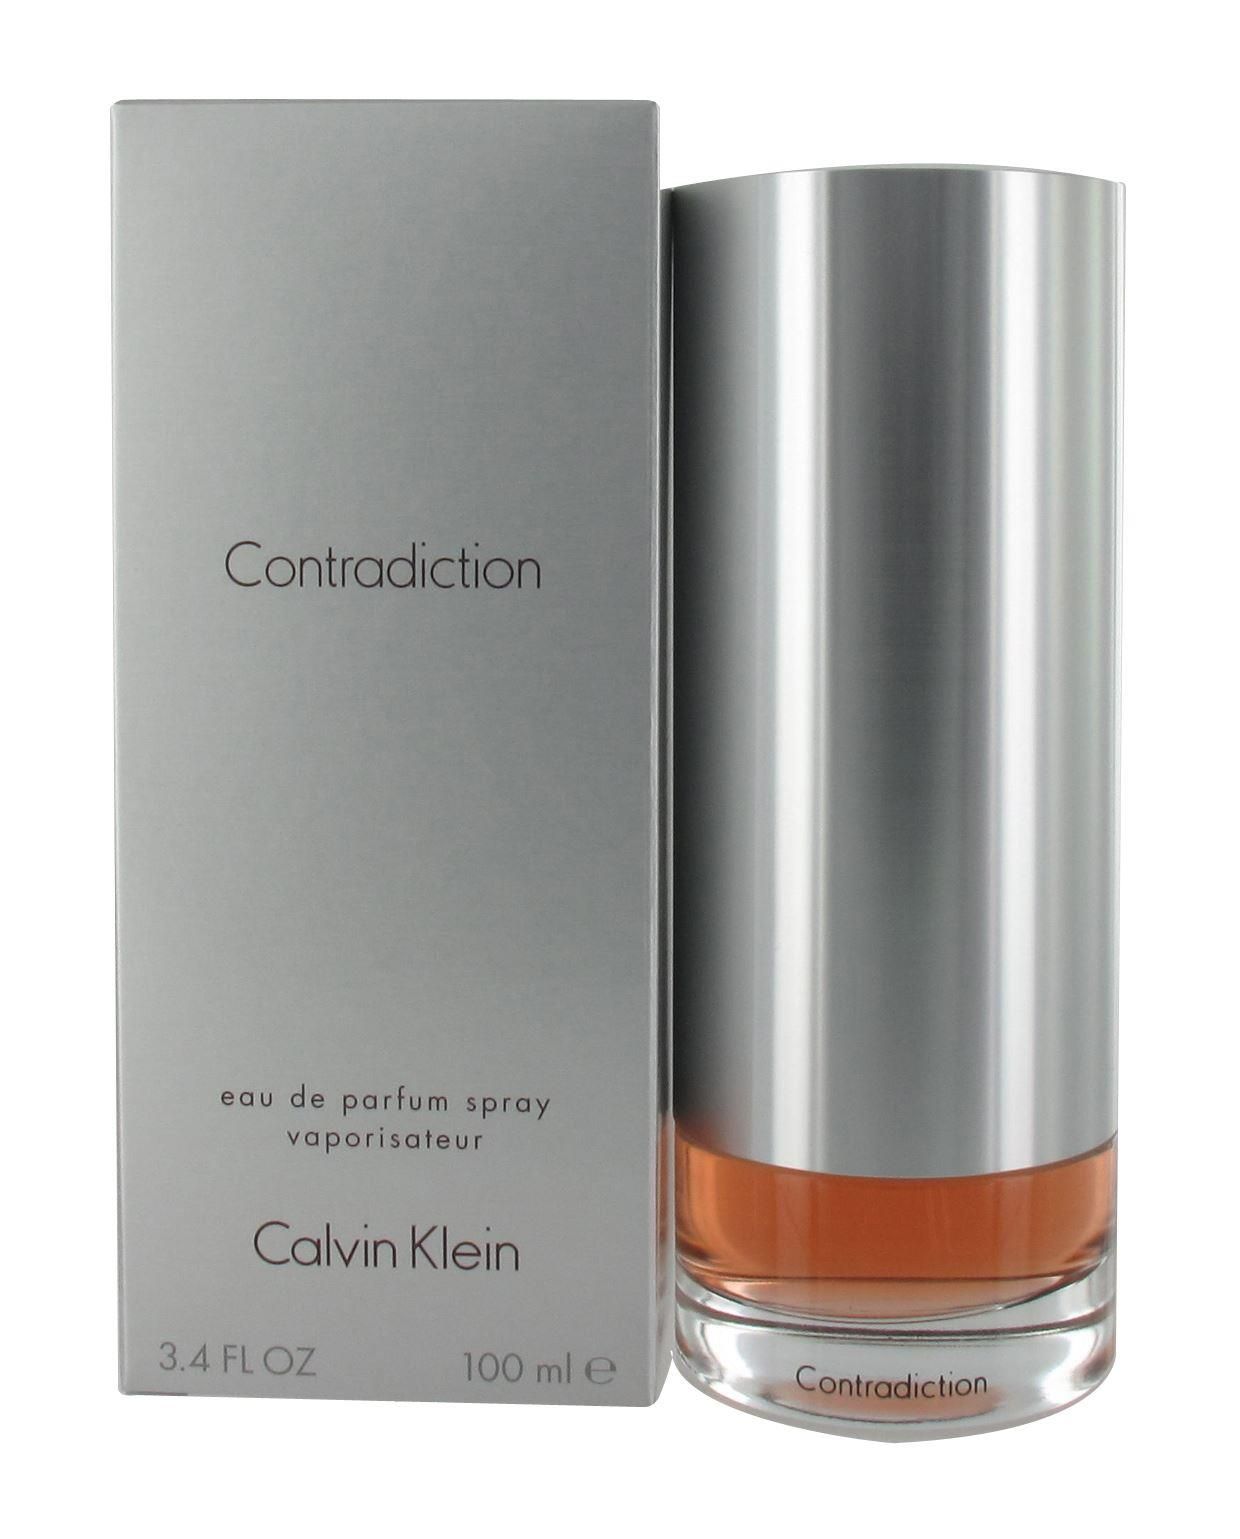 Calvin Klein Contradiction 100ml Eau de Parfum Spray for Her